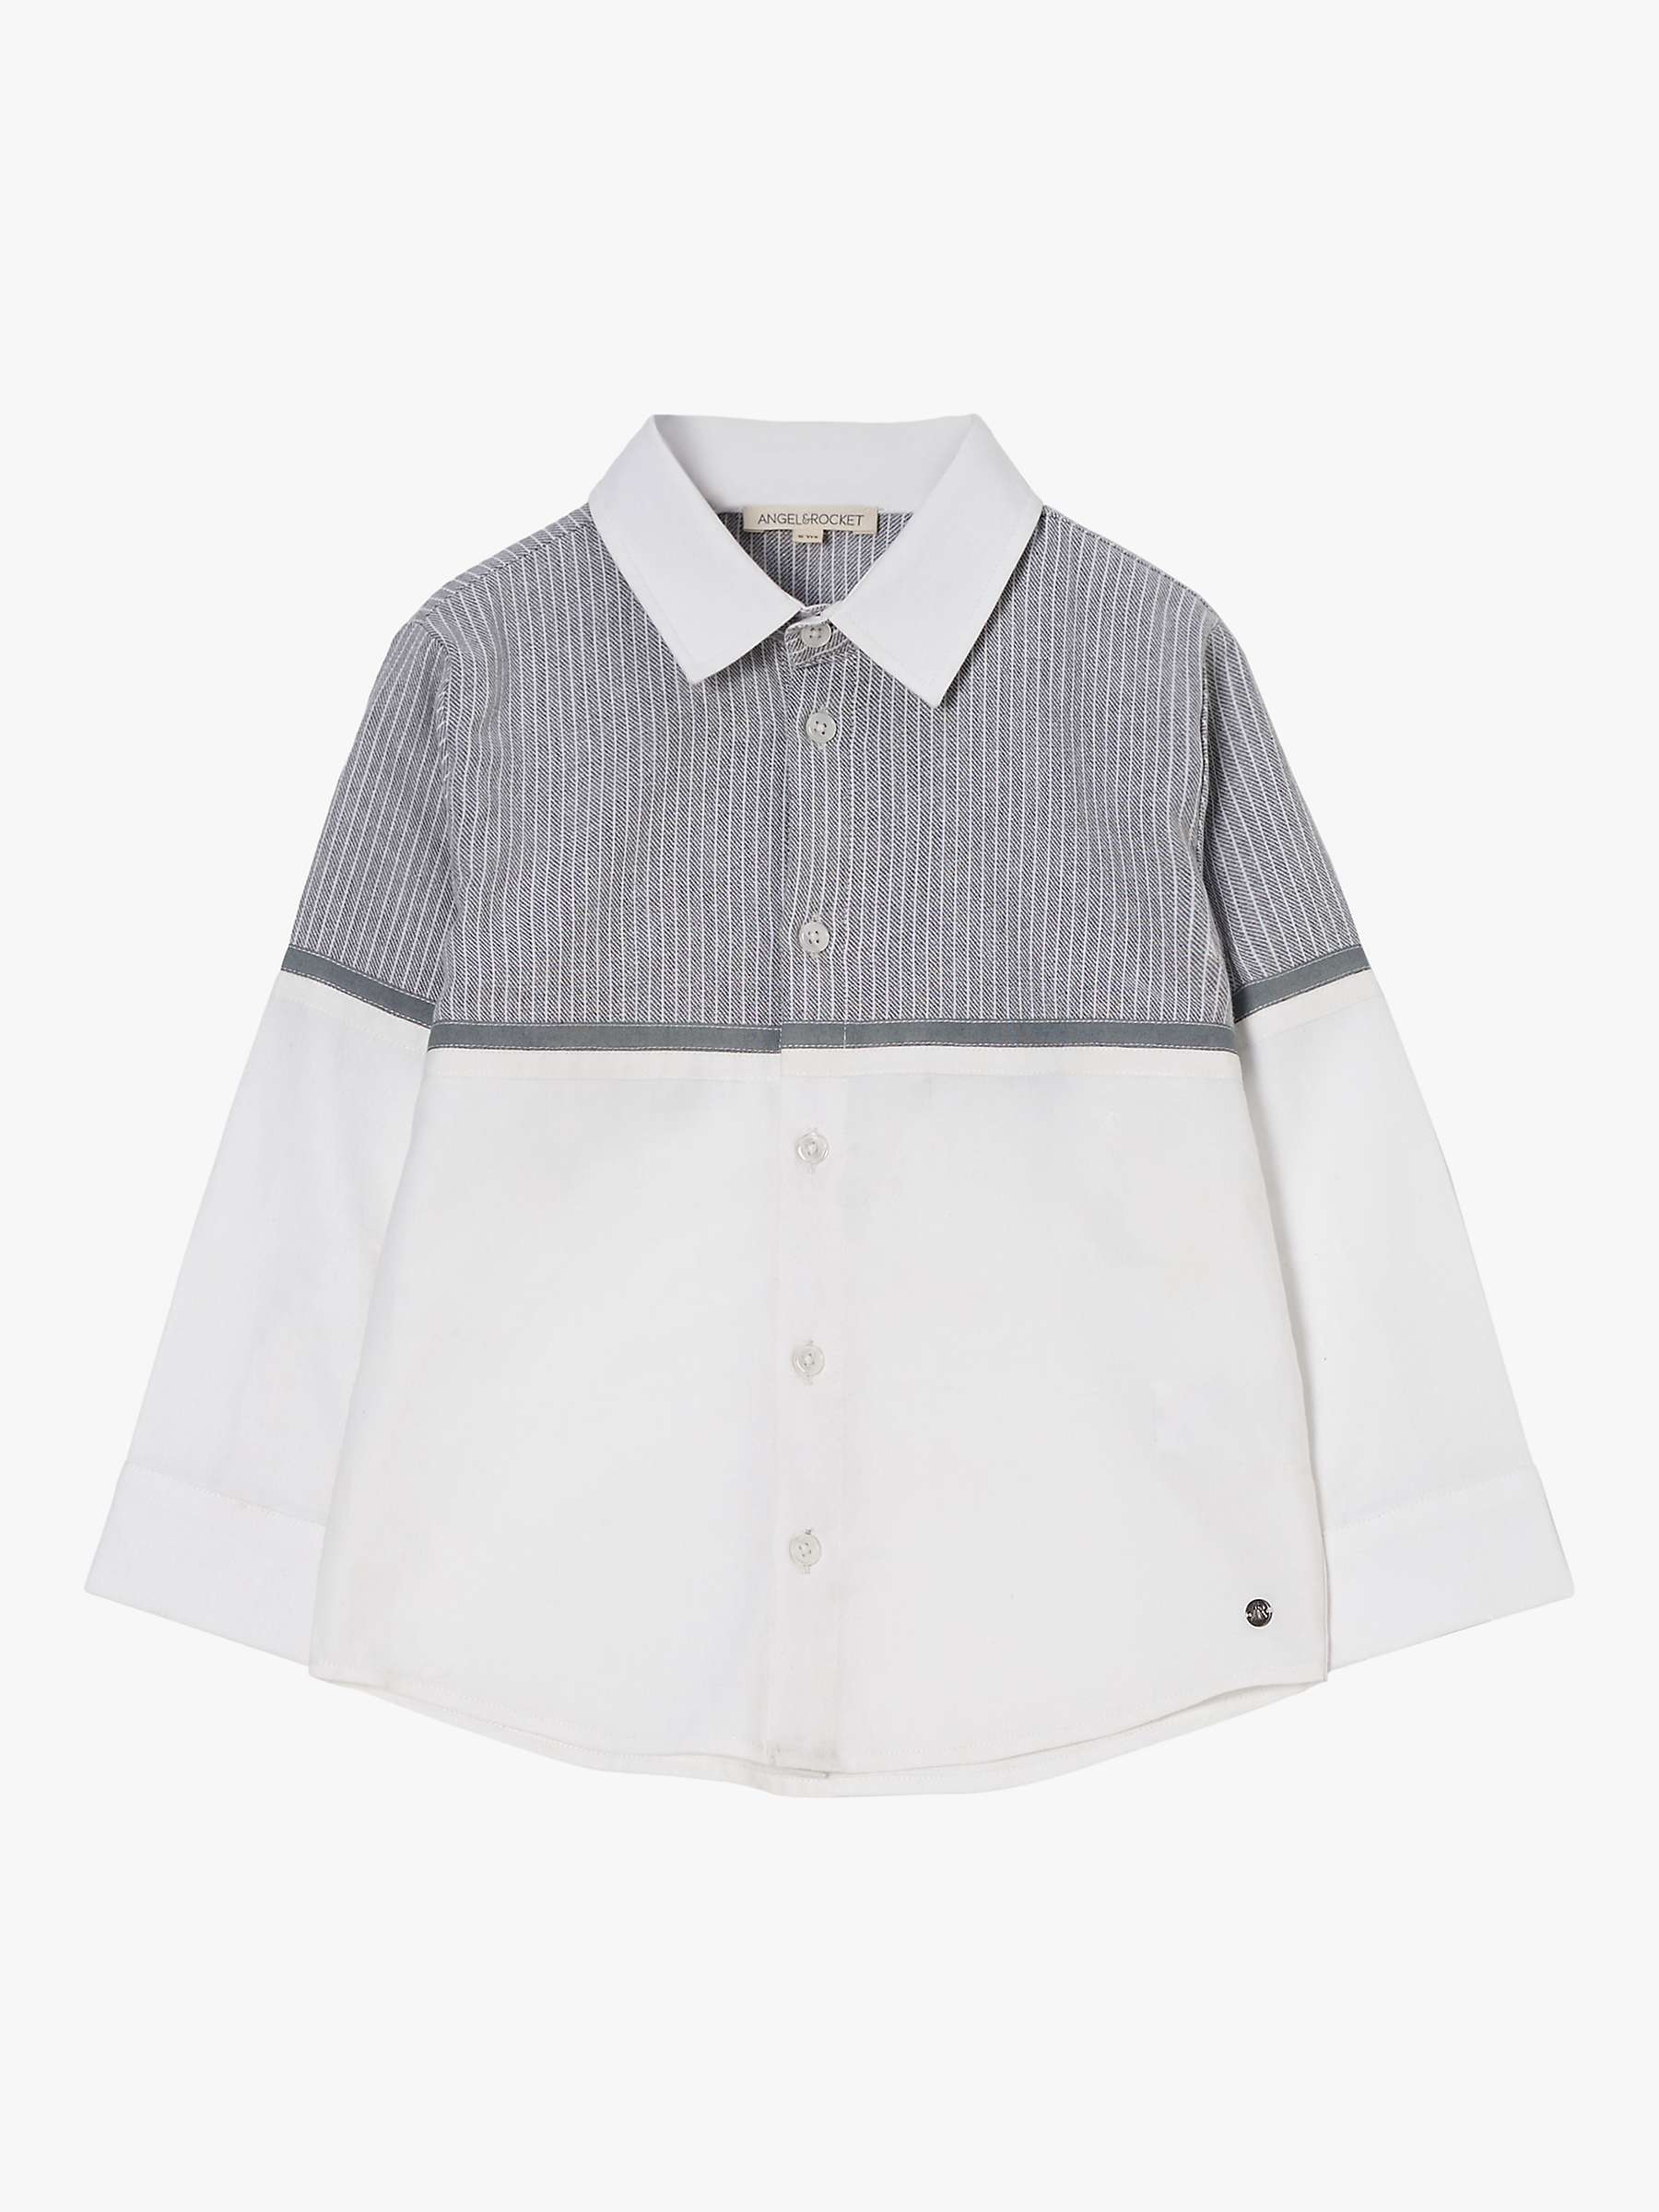 Buy Angel & Rocket Kids' Striped Yoke Oxford Shirt, White/Grey Online at johnlewis.com